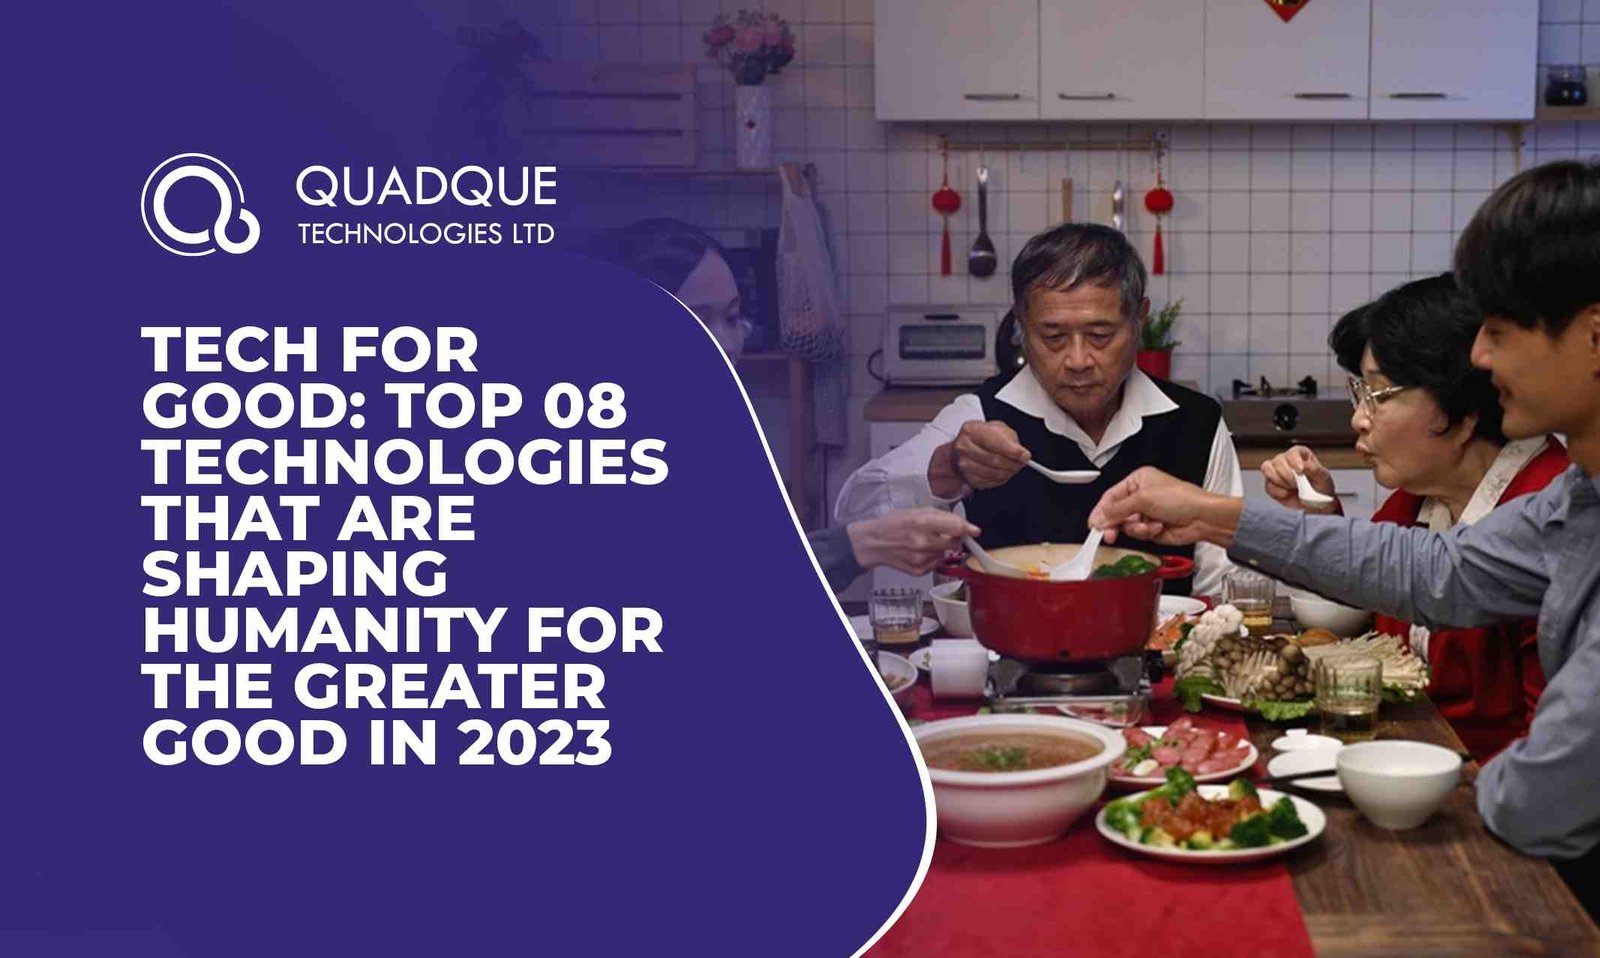 Quadque Technologies Limited